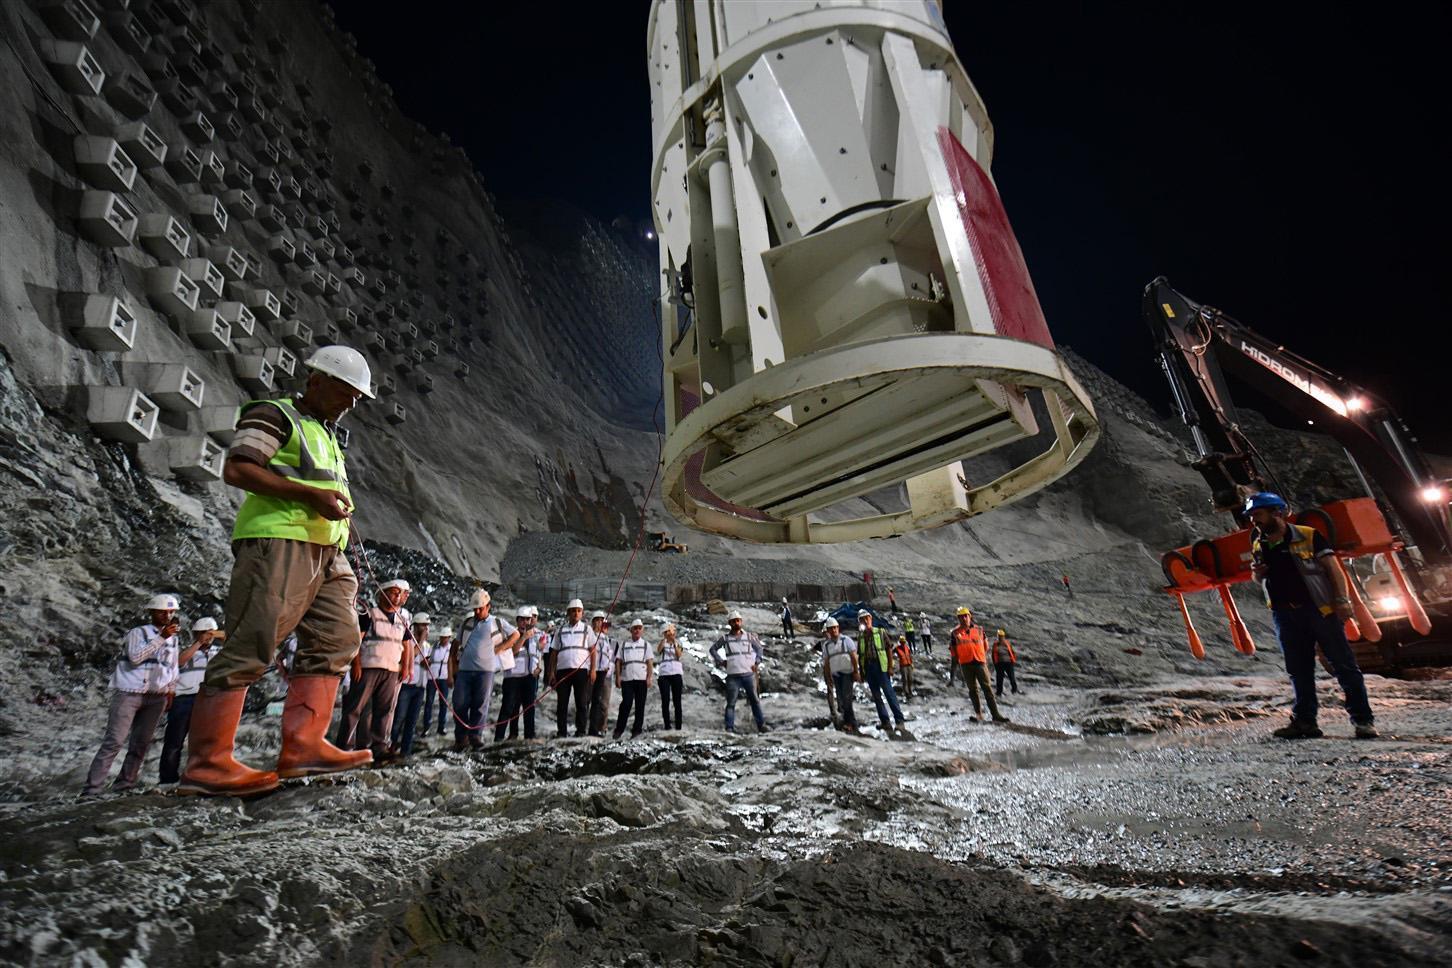 Türkiyenin en yüksek baraj inşaatında 64 metre gövdeye ulaşıldı